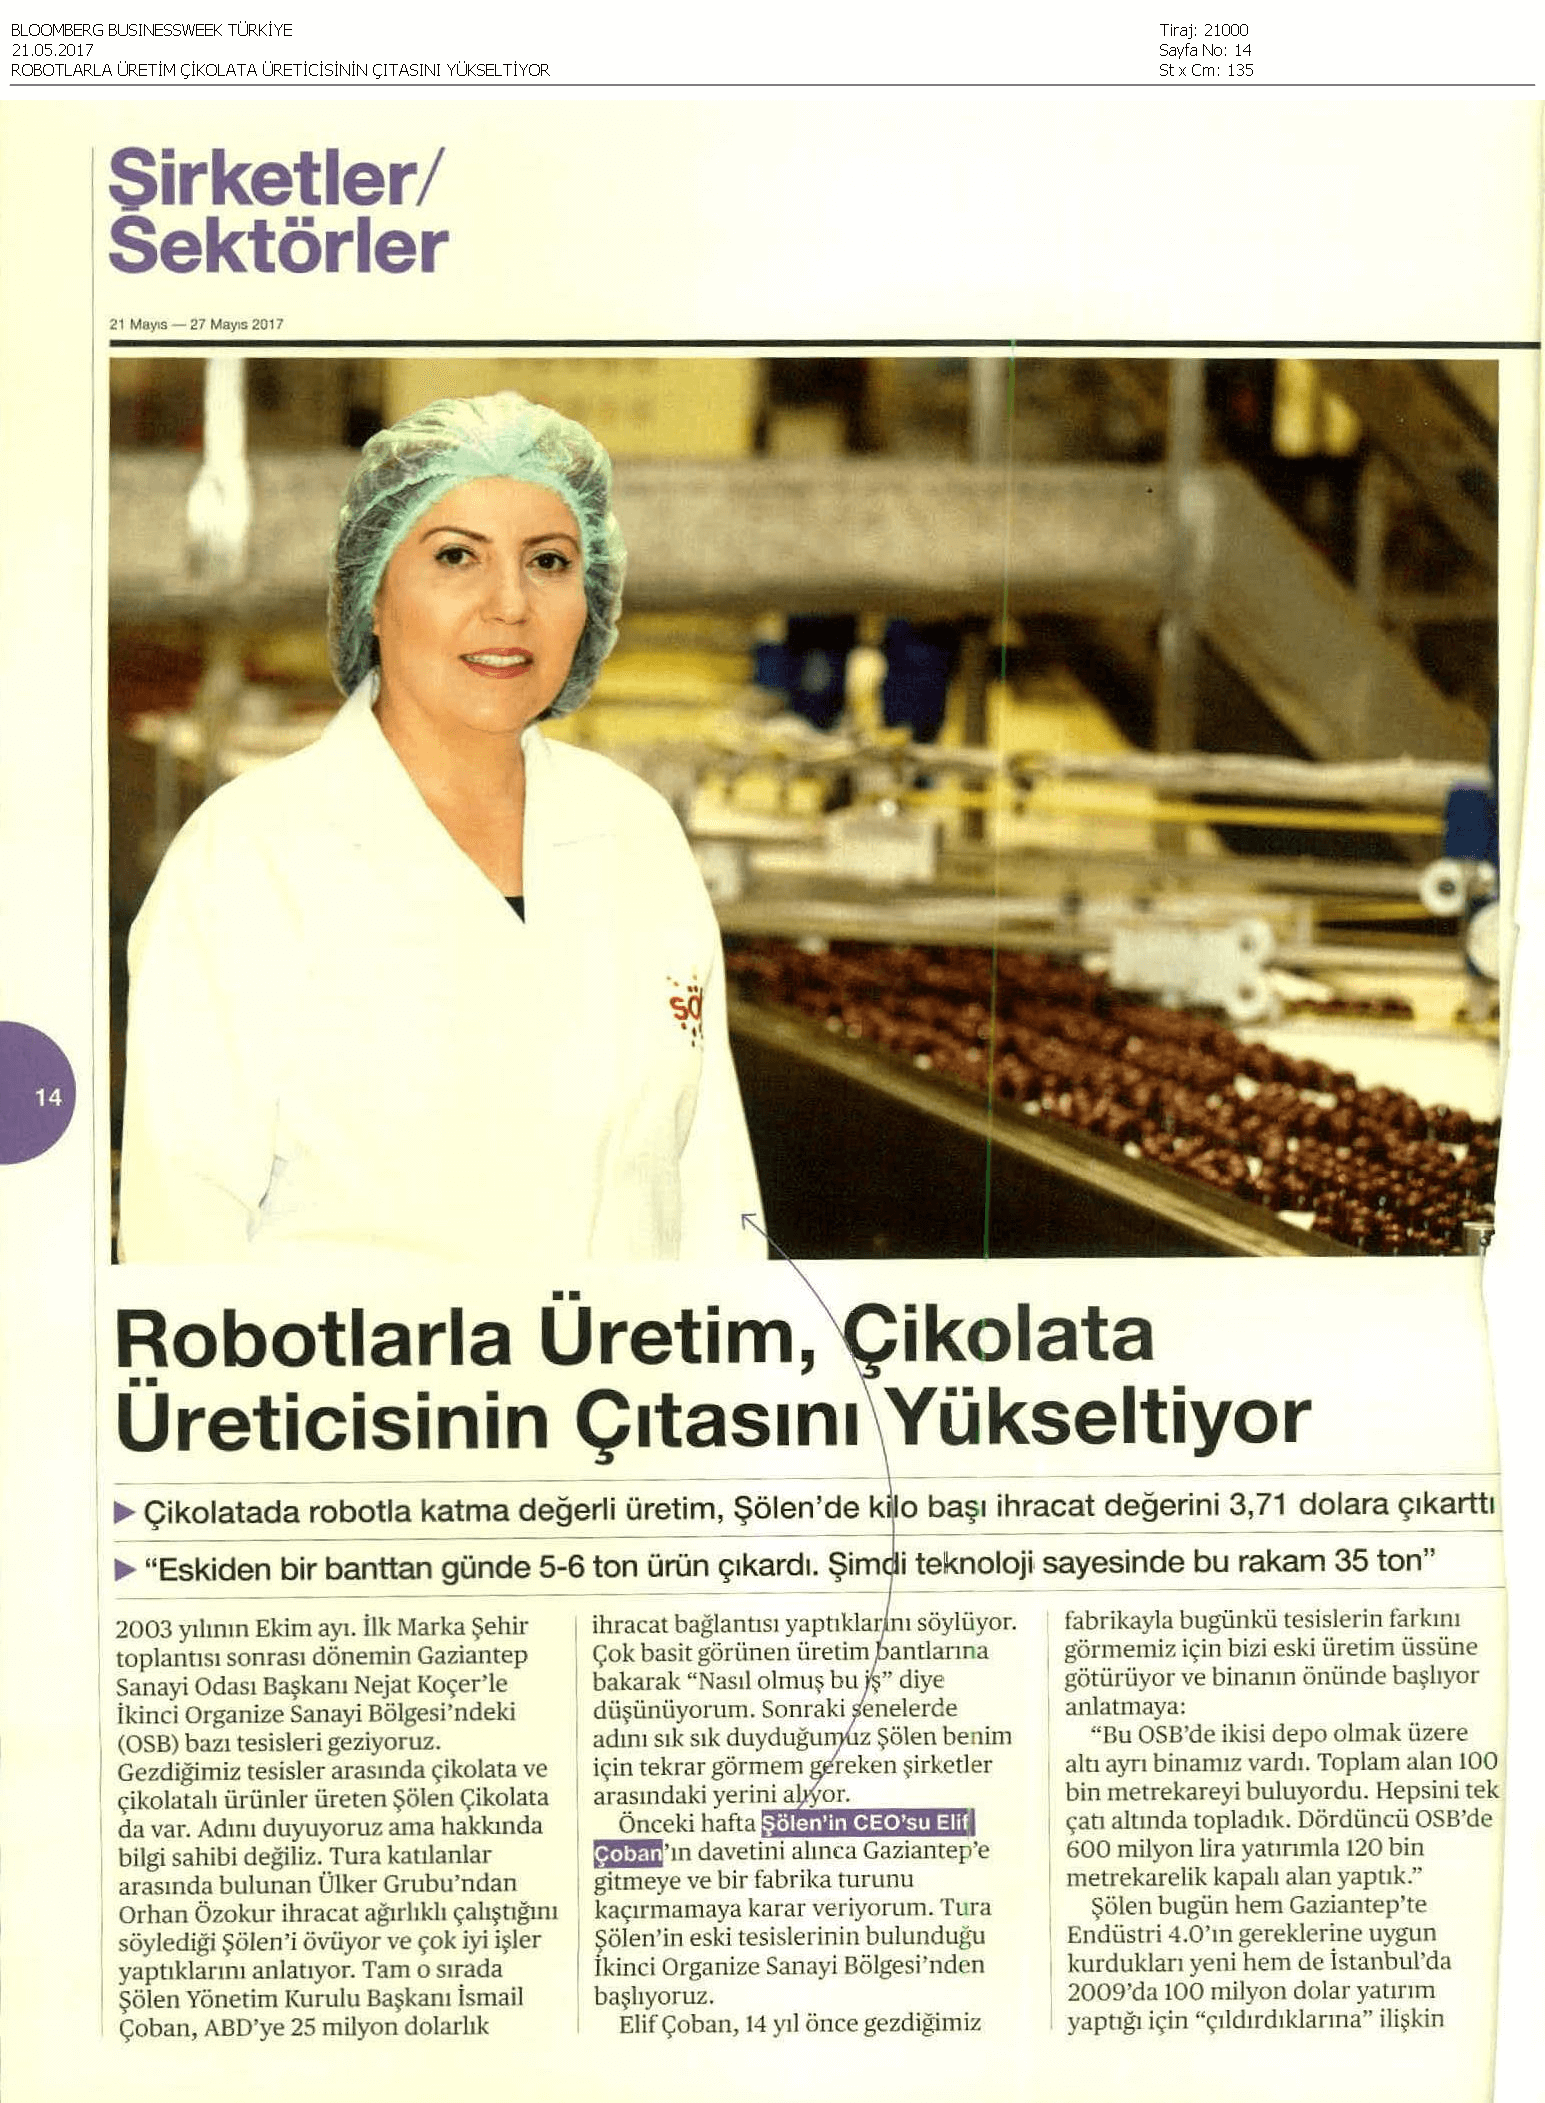 Robotlarla Üretim Çikolata Üreticisin Çıtasını Yükseltiyor_1